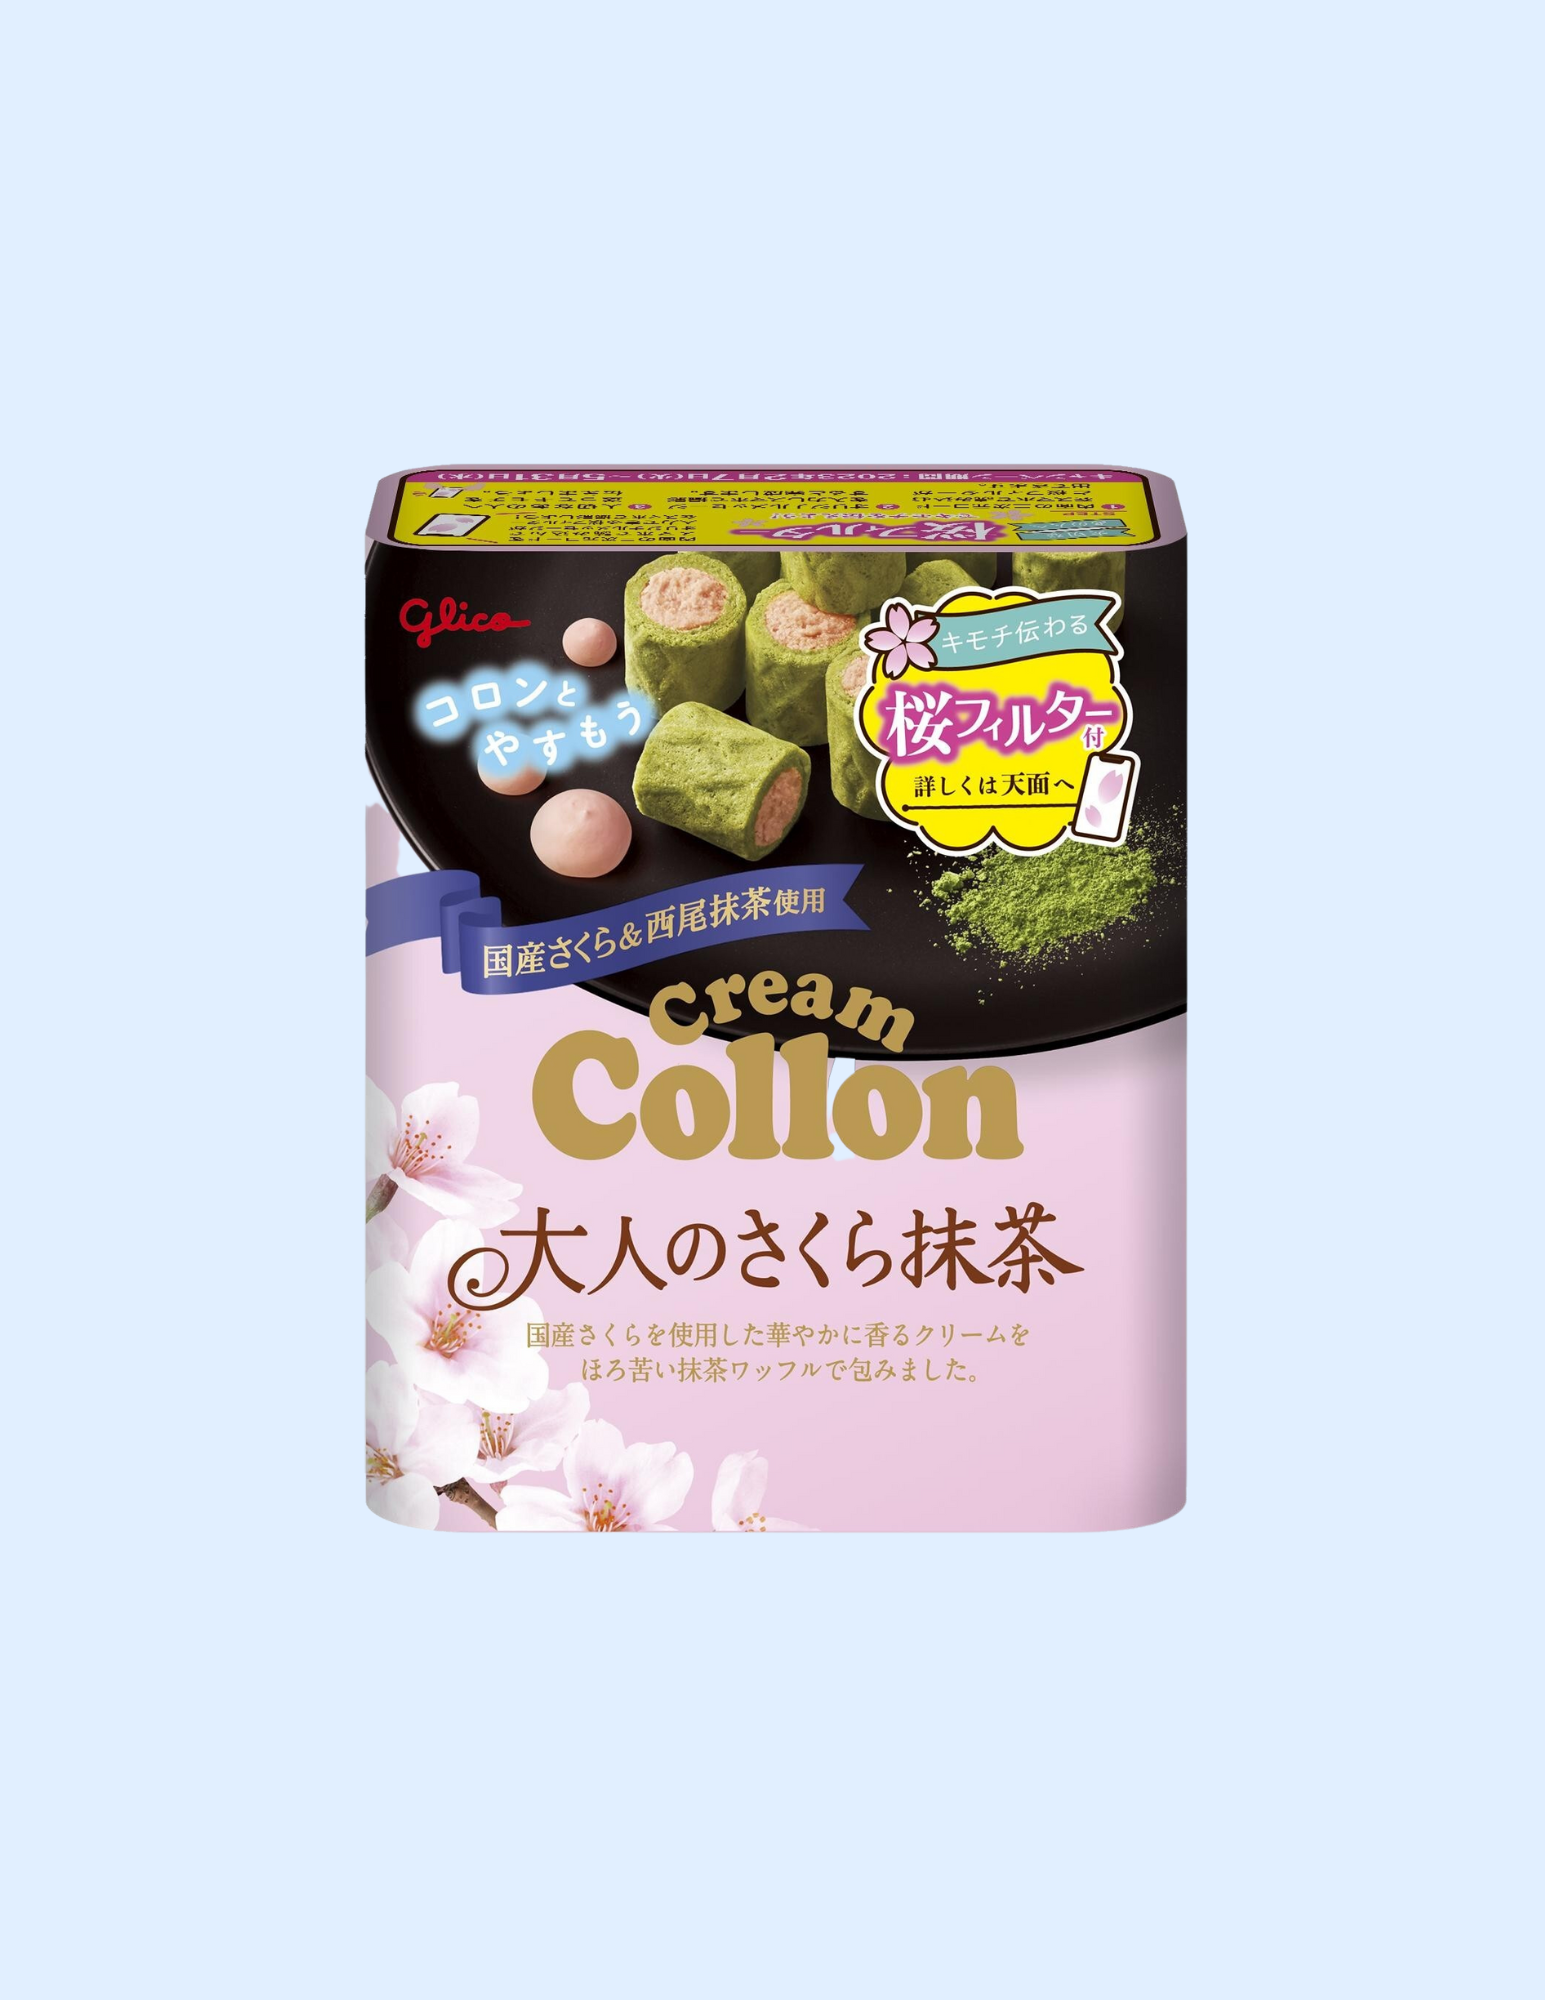 Glico Cream Colon Sakura Matcha